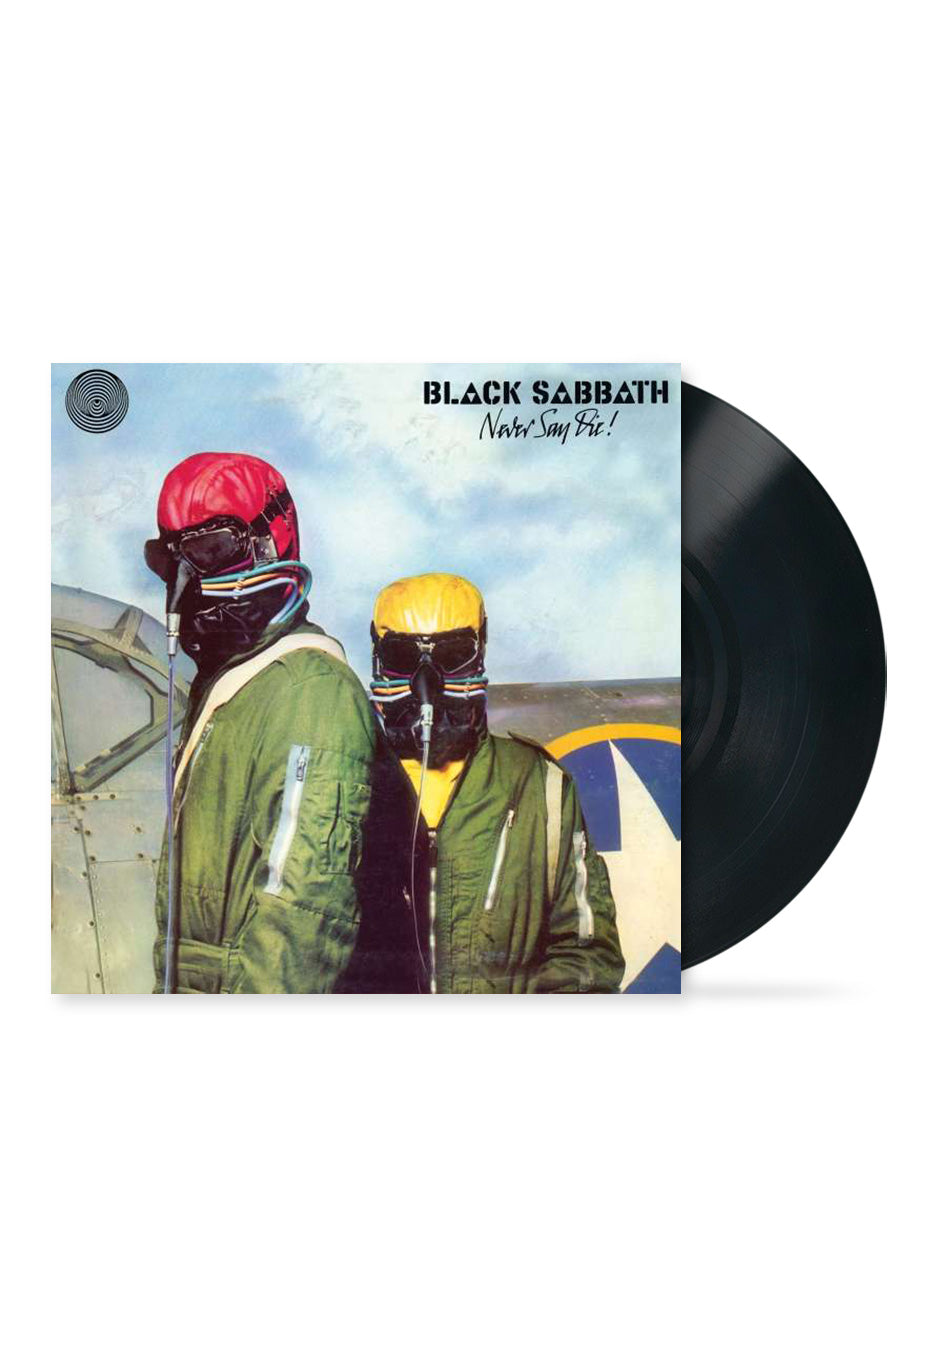 Black Sabbath - Never Say Die! - Vinyl